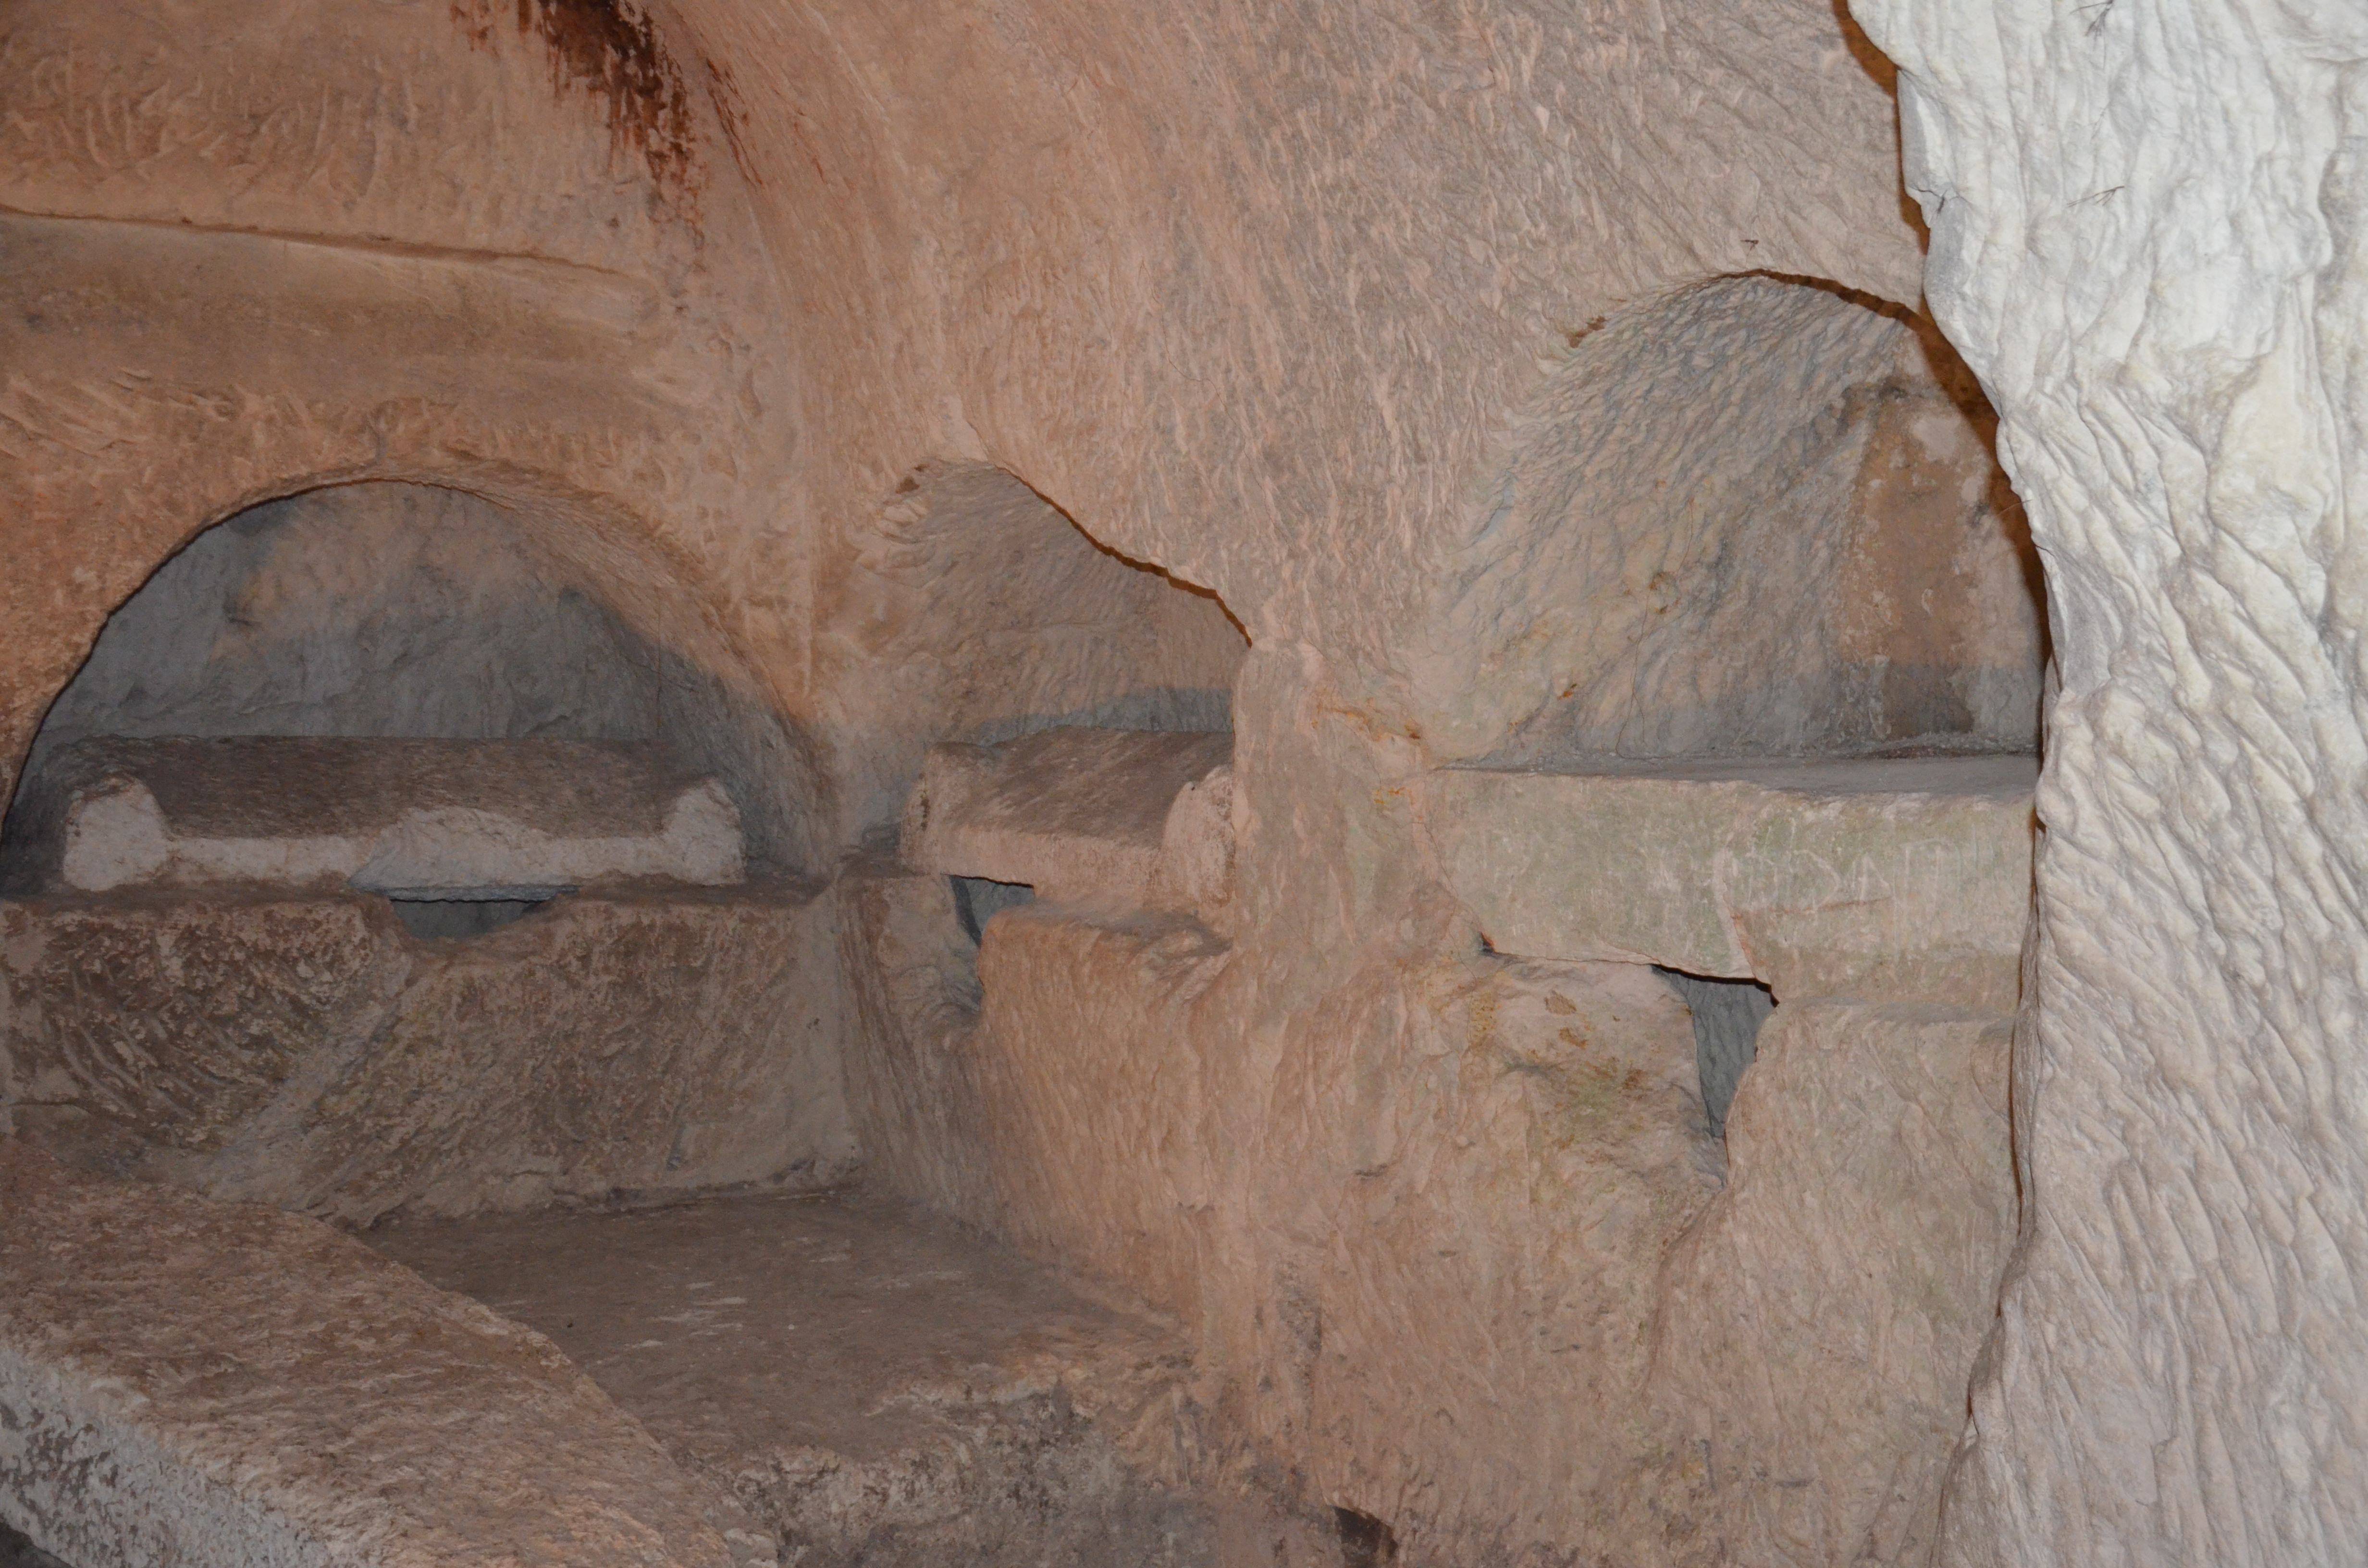 "Próféták sírjai", hosszanti folyosó falba vájt sírhelyekkel: a késő ókorban Jeruzsálembe érkező keresztény zarándokok temetkezési helye az Olajfák hegyén